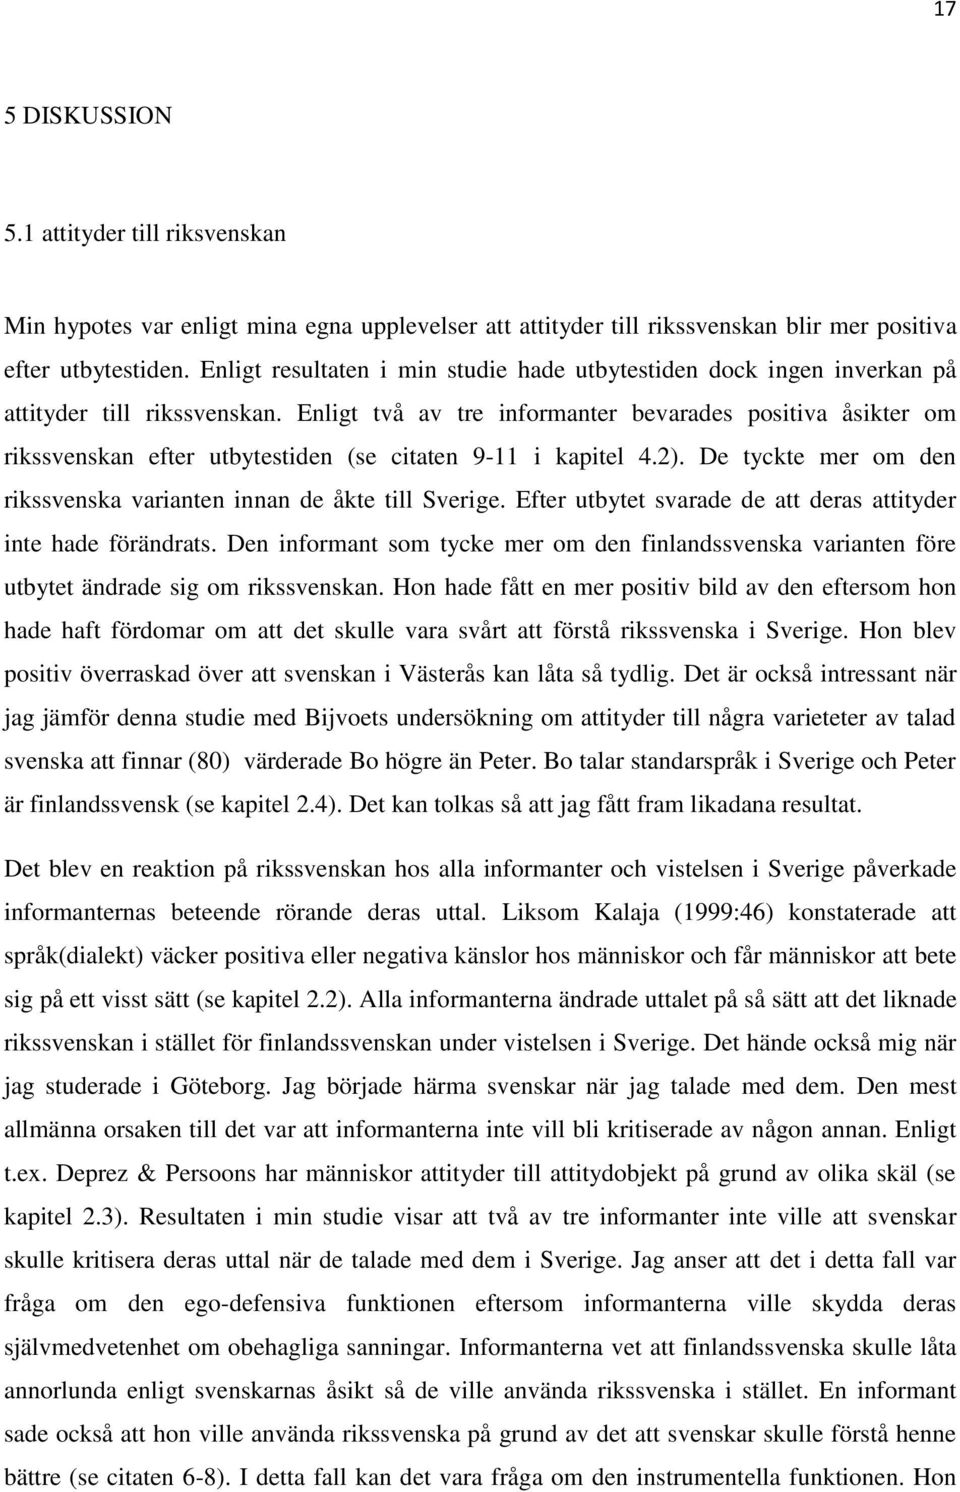 Enligt två av tre informanter bevarades positiva åsikter om rikssvenskan efter utbytestiden (se citaten 9-11 i kapitel 4.2). De tyckte mer om den rikssvenska varianten innan de åkte till Sverige.